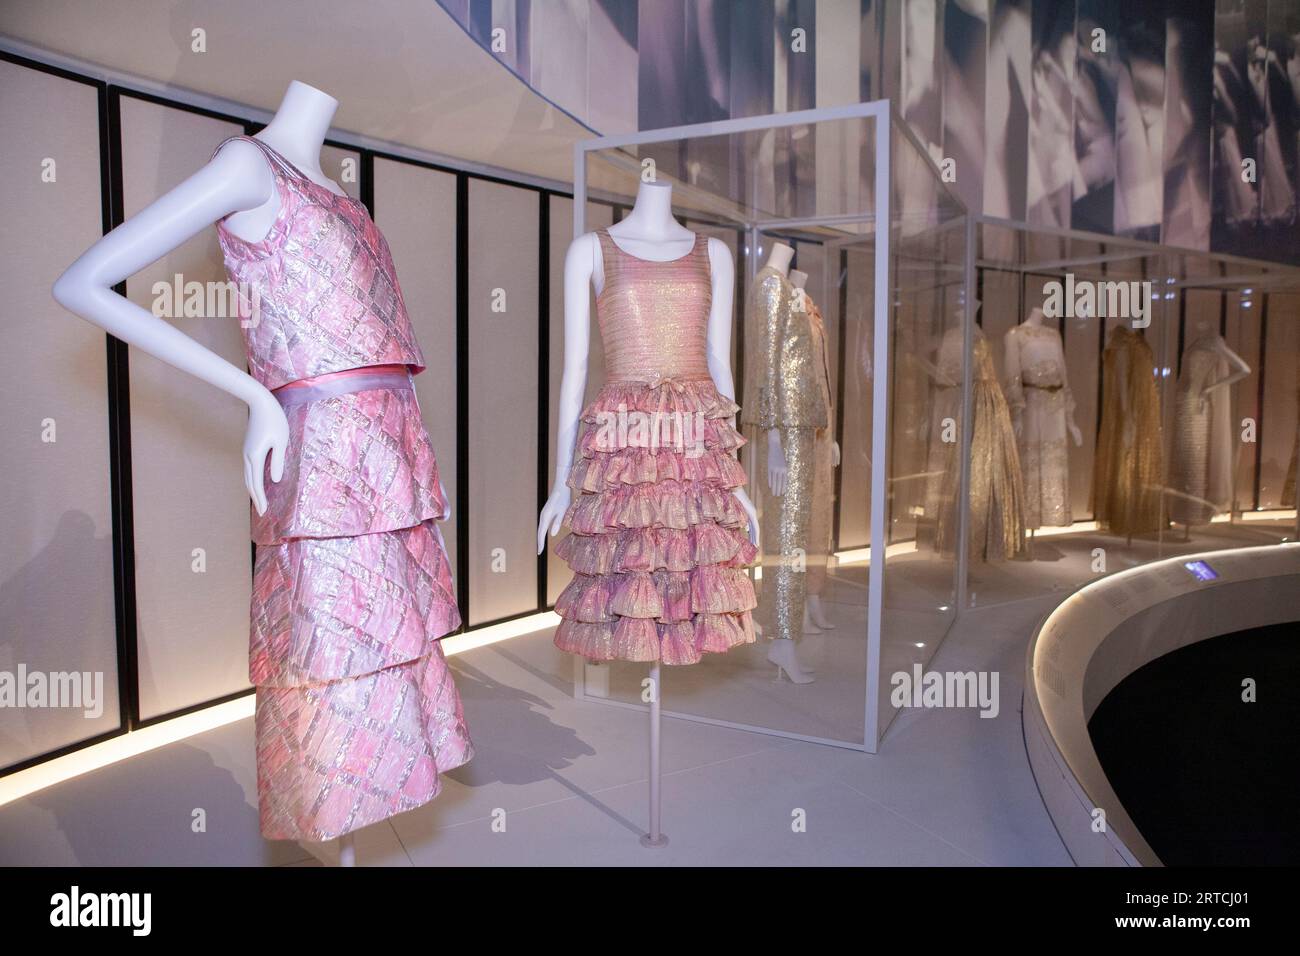 Gabrielle Chanel. Fashion Manifesto” Exhibition To Launch In London - A&E  Magazine